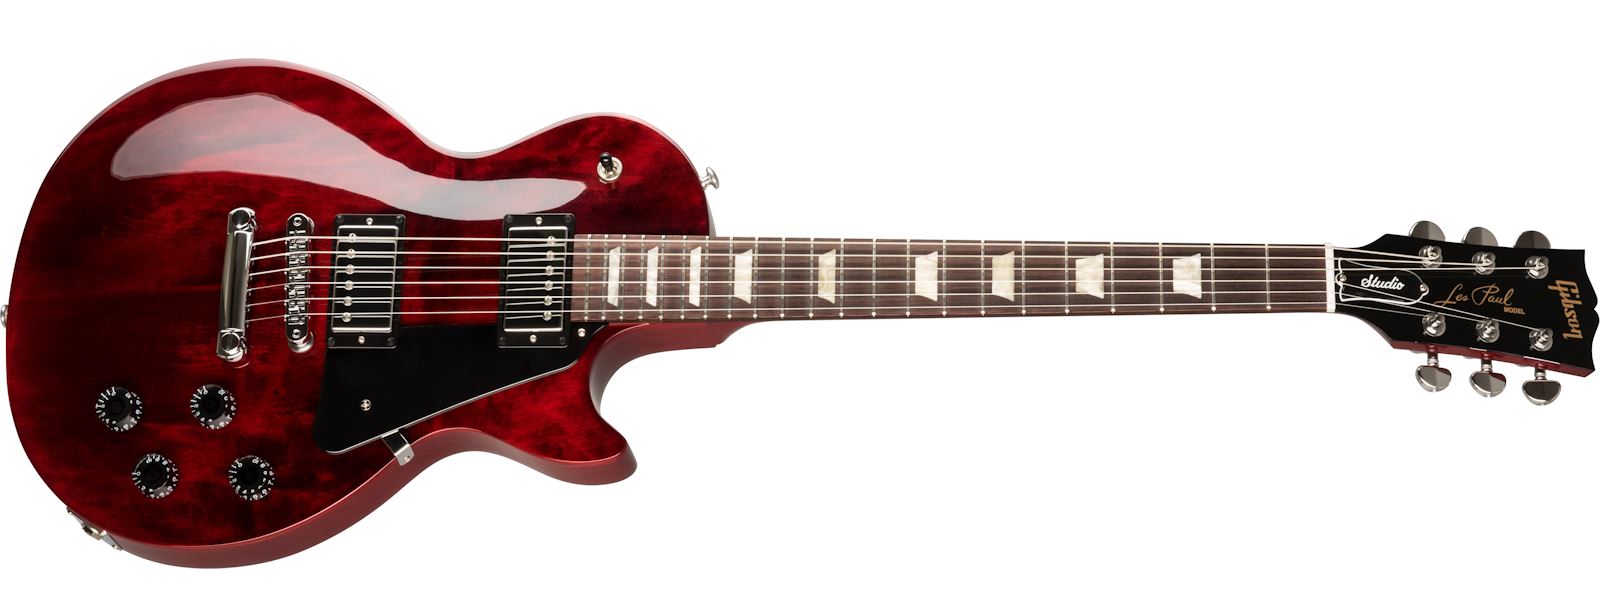 11+ Harga Gitar Listrik Gibson Original Booming